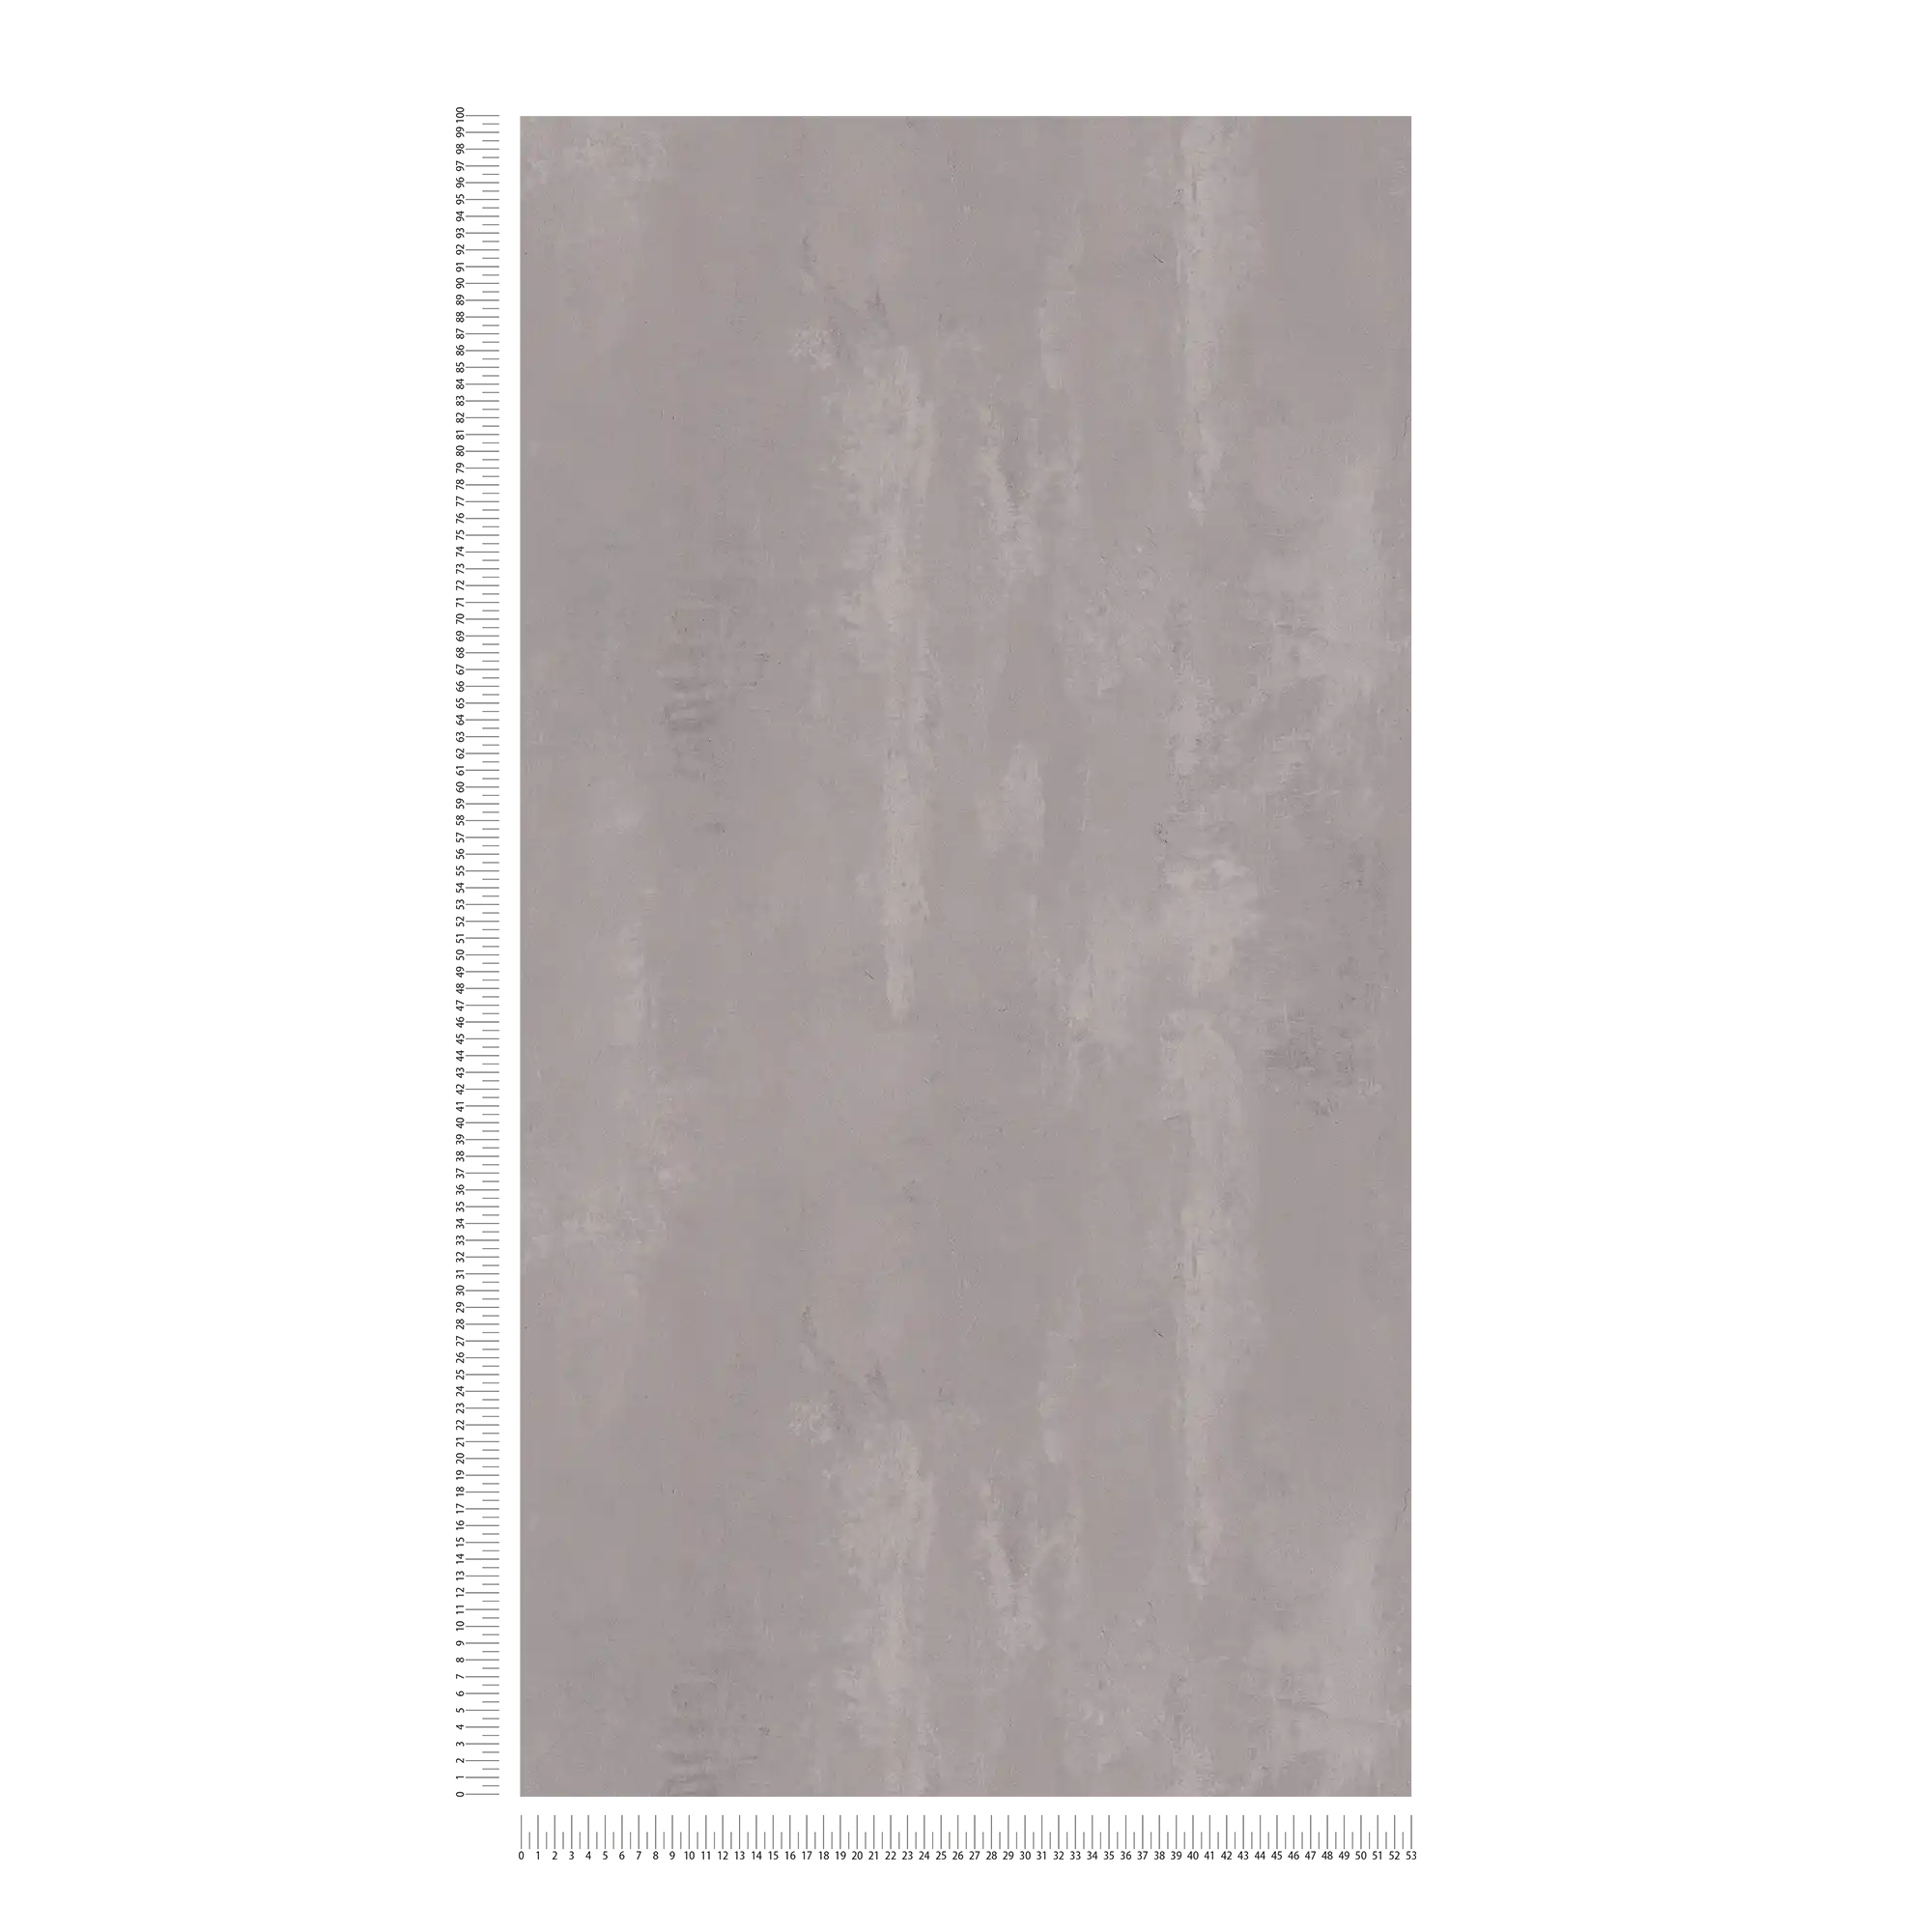             Vliesbehang met geveegde betonlook in used look - grijs
        